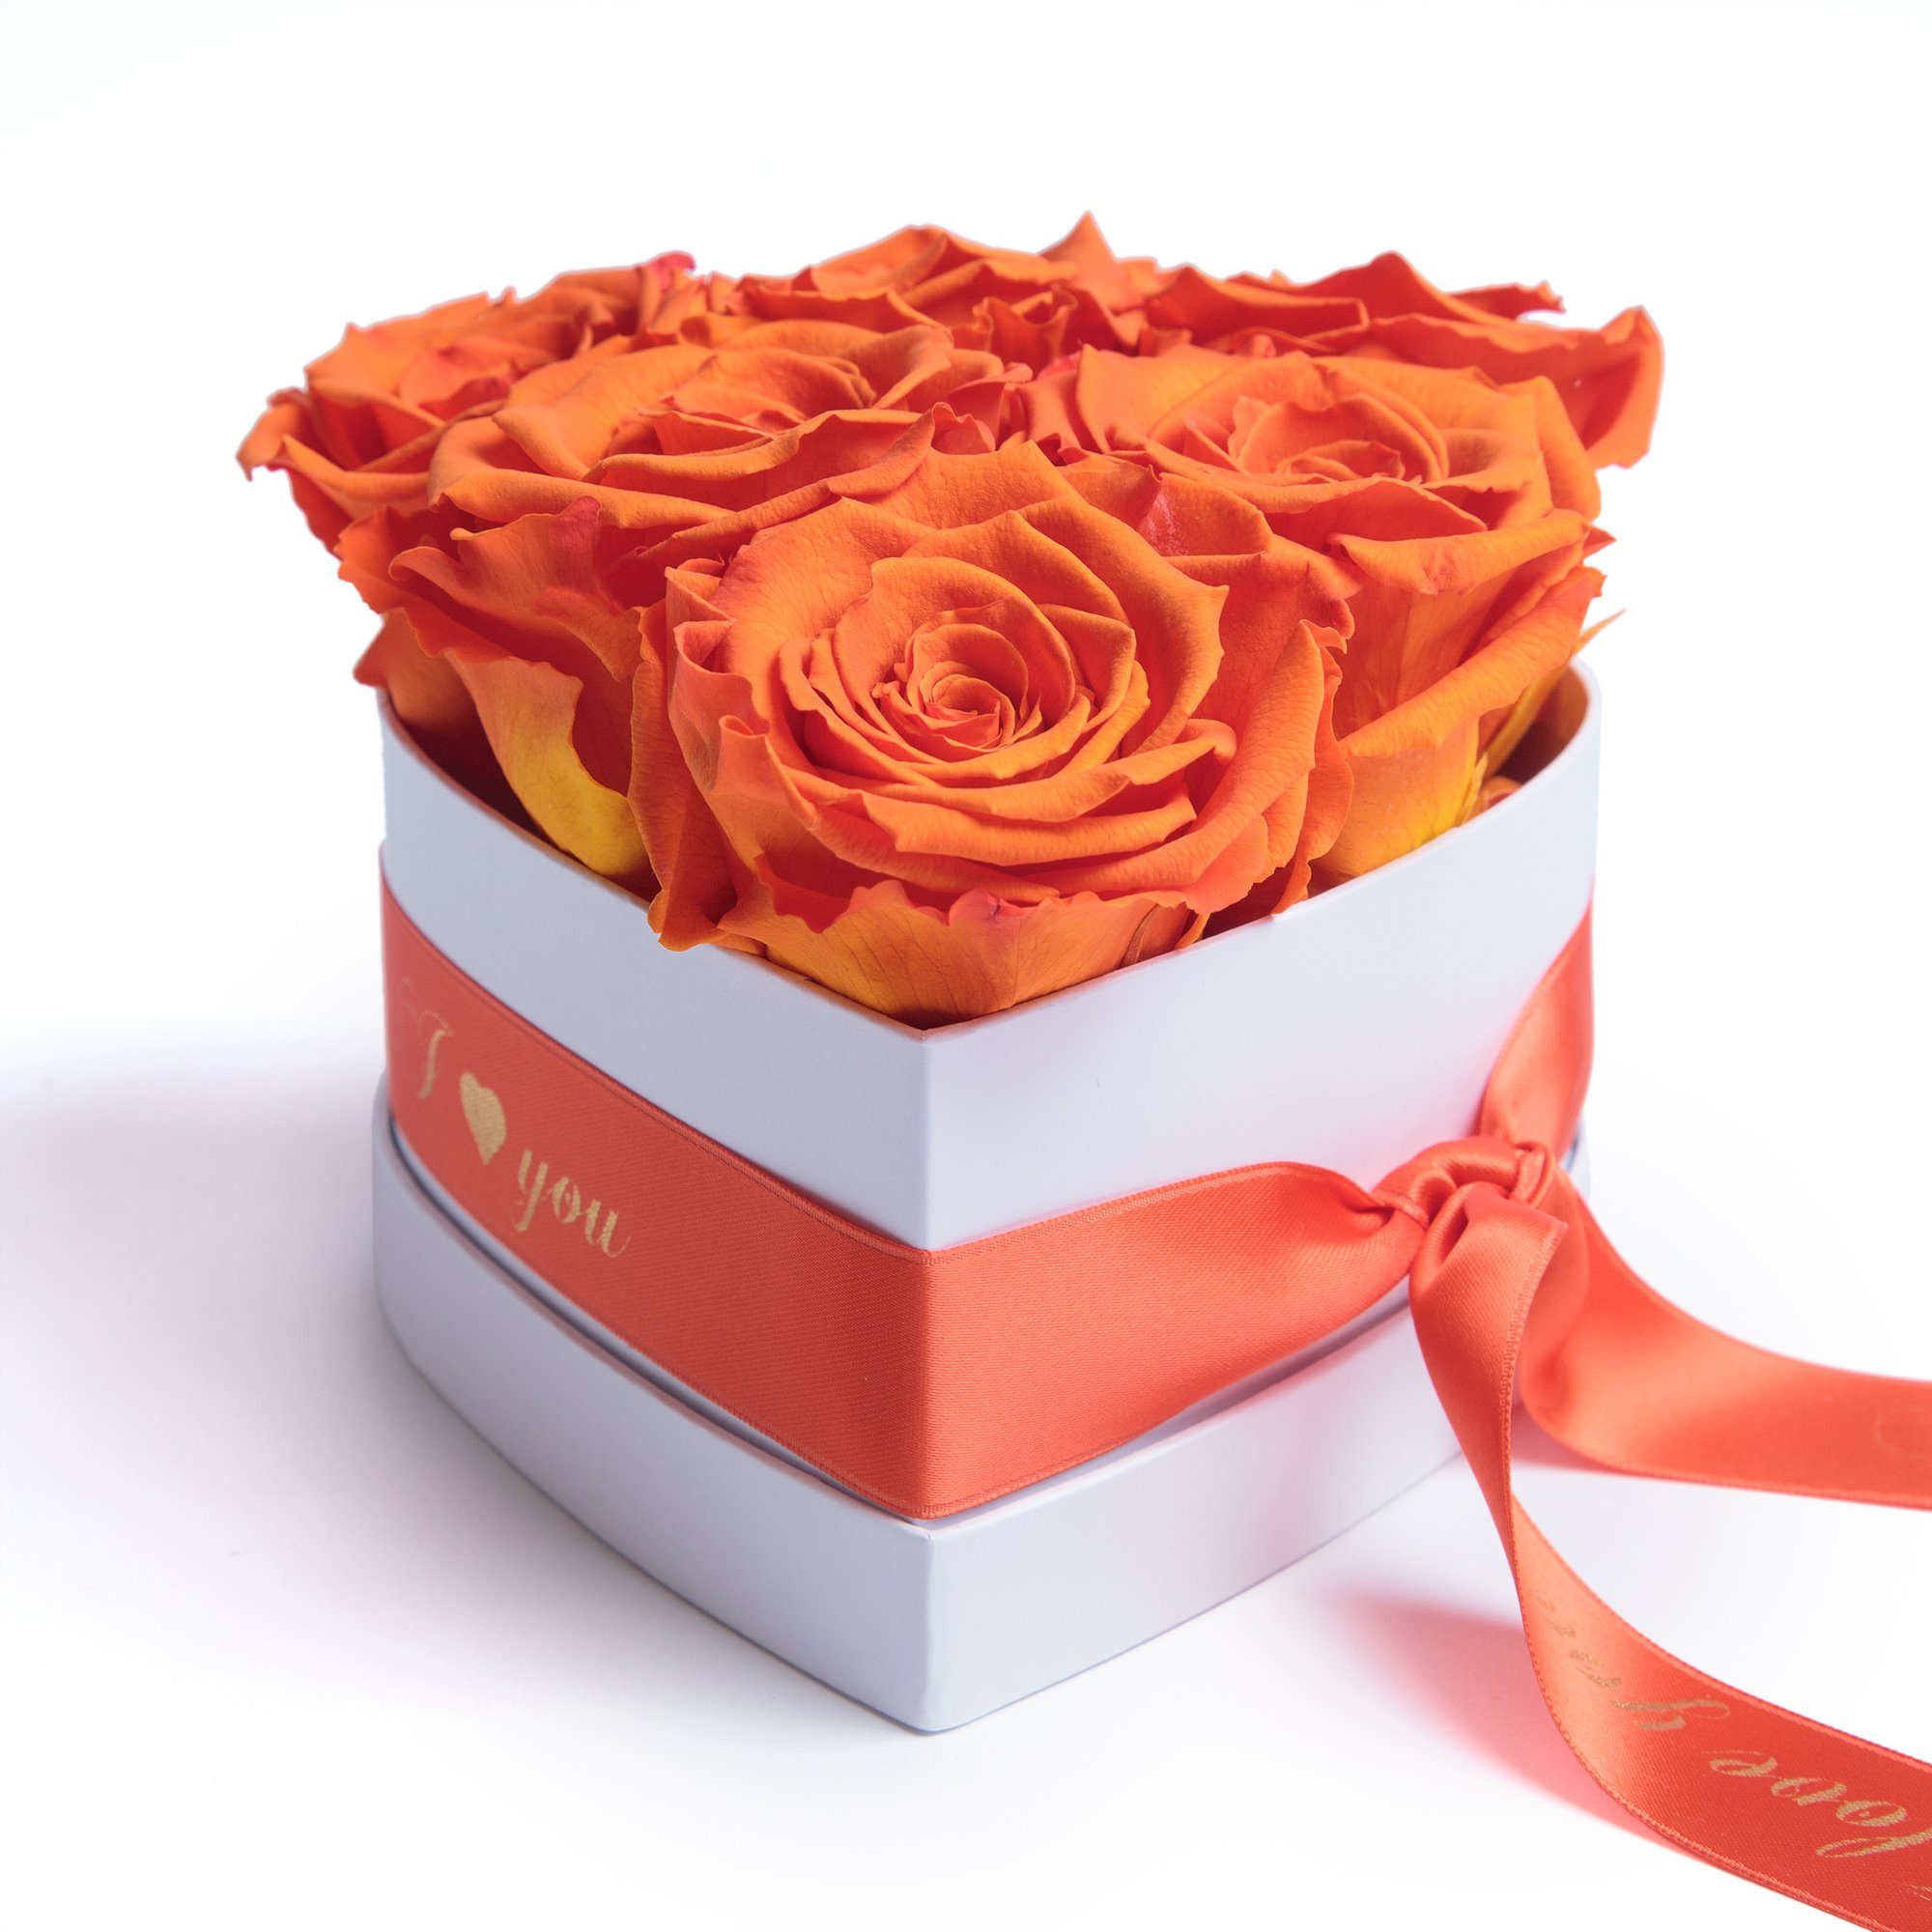 Kunstblume Infinity Rosenbox Herz 6 ewige Rosen I Love You Geschenk für Frauen Rose, ROSEMARIE SCHULZ Heidelberg, Höhe 10 cm, Valentinstag Geschenk für Frau Orange